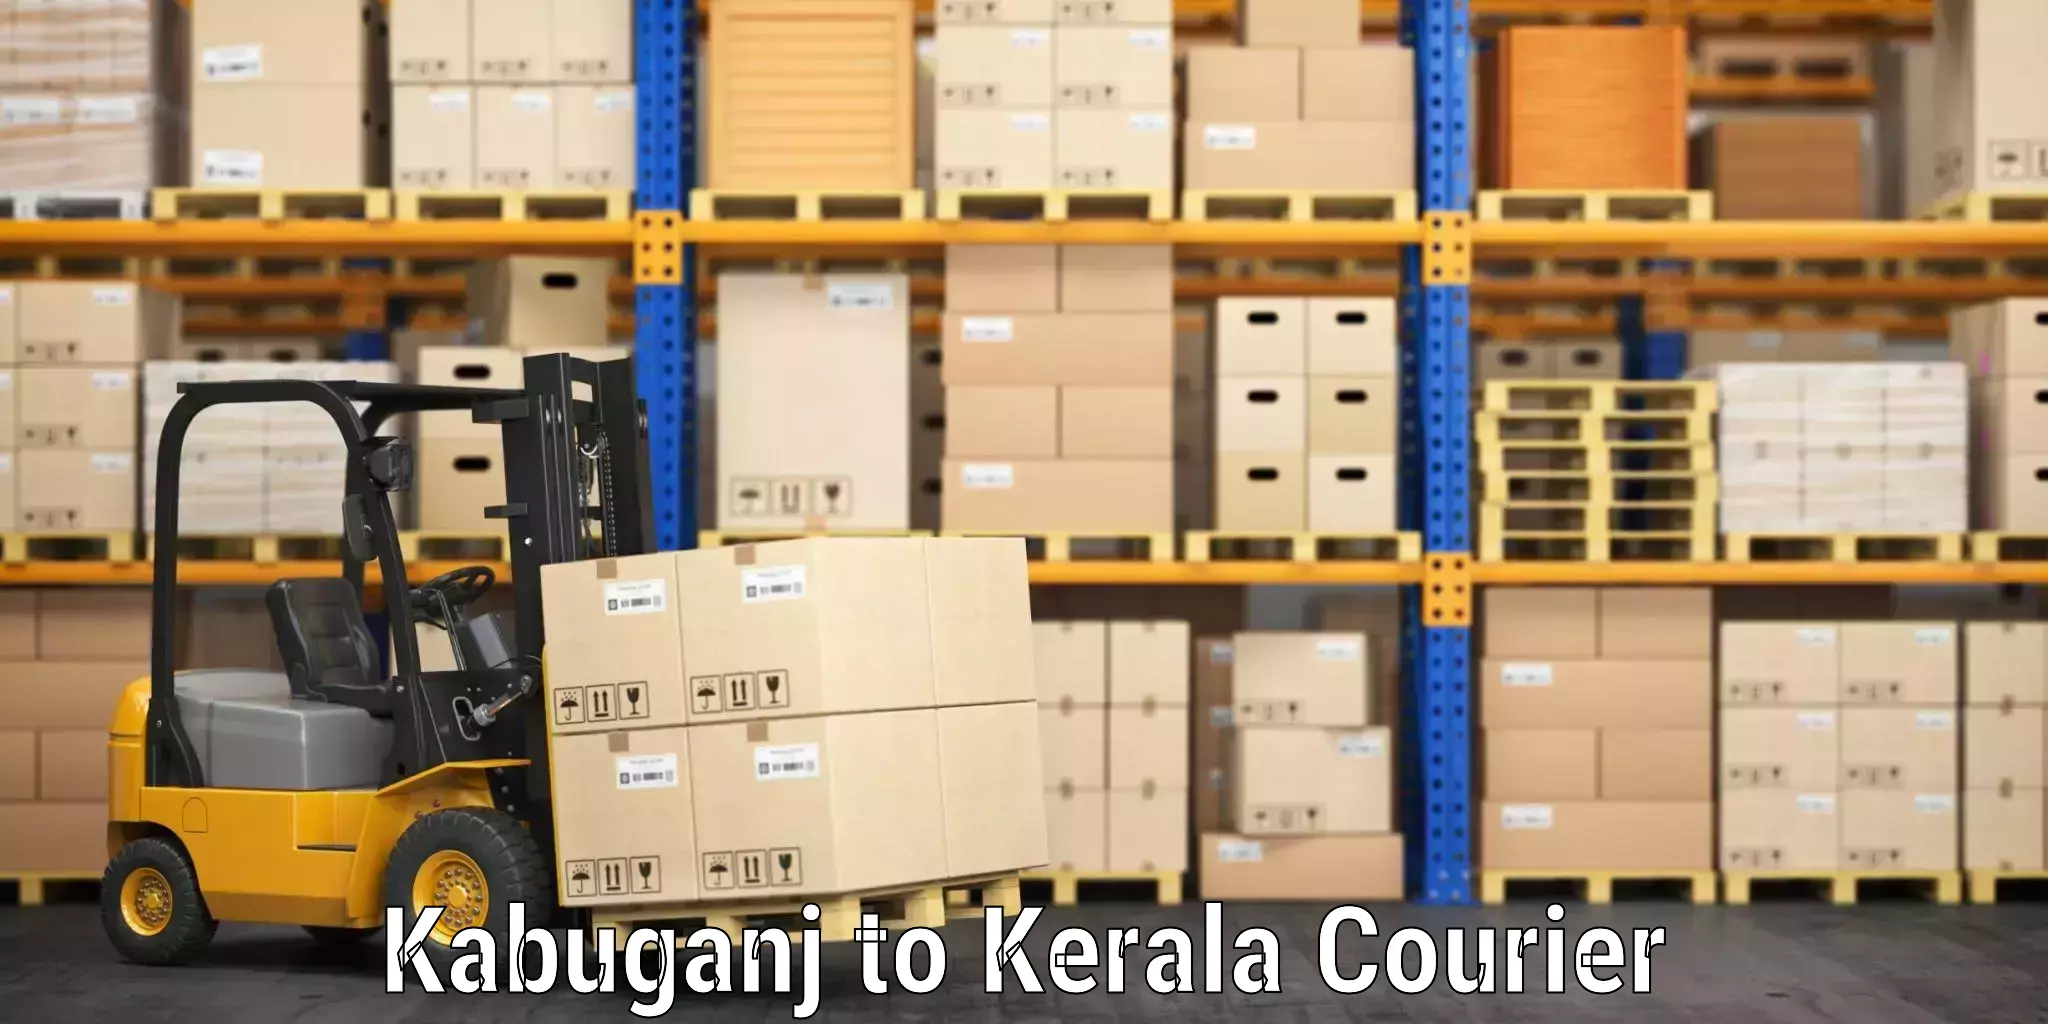 Luggage shipping specialists Kabuganj to Kakkayam